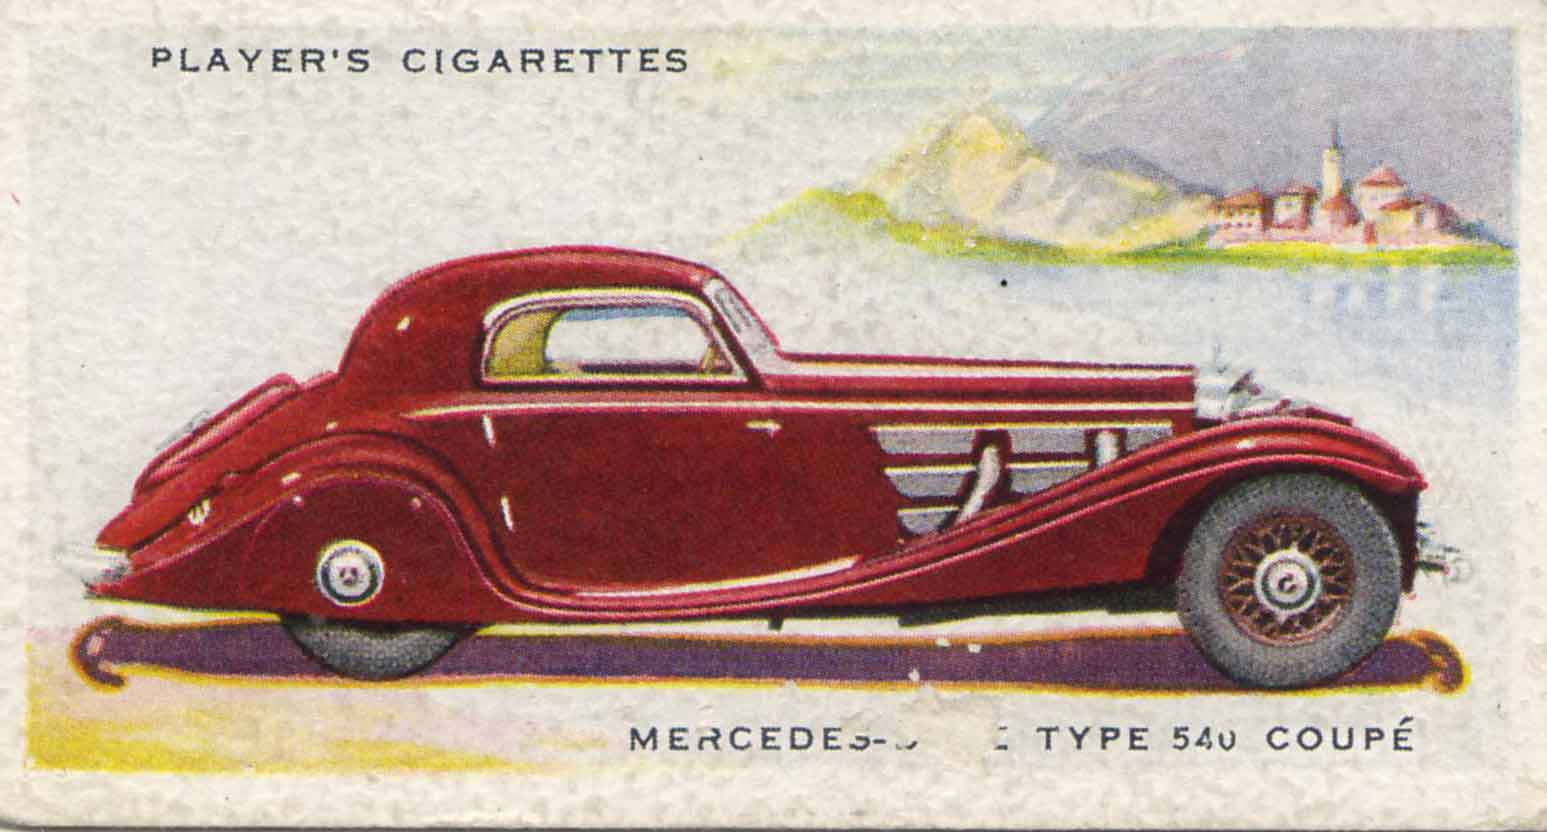 Mercedes C-Type Coupé. 1937 cigarette card.